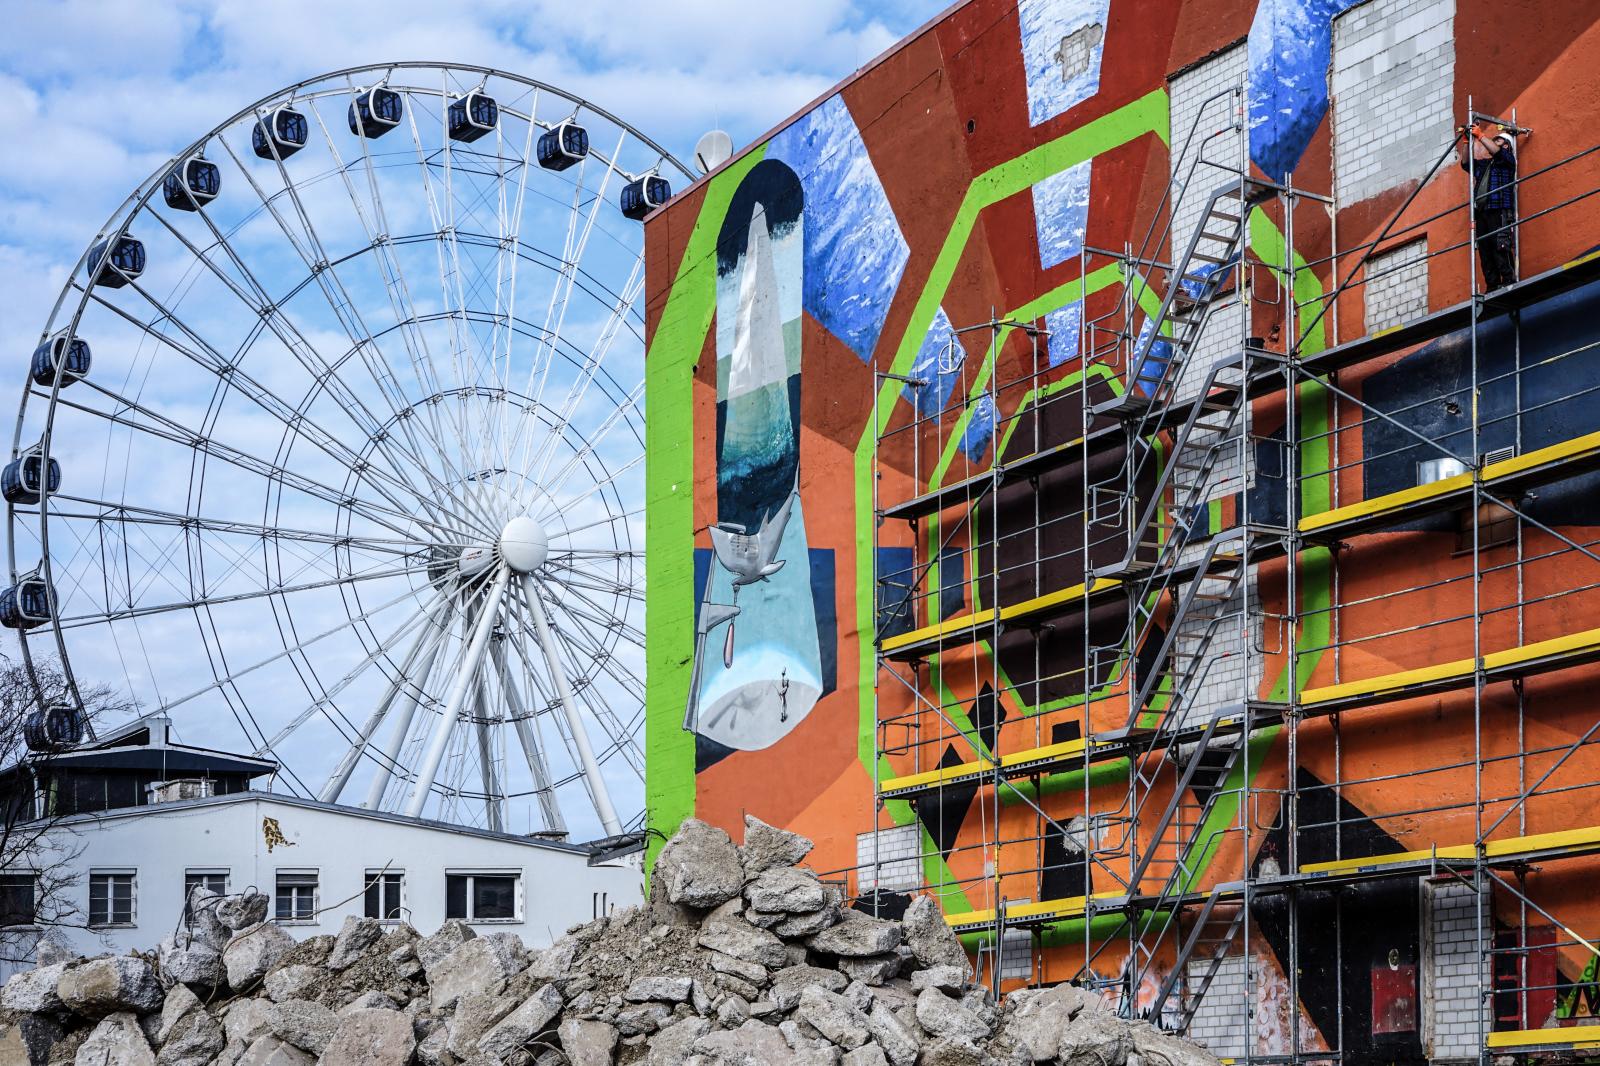 Werksviertel Munich - An exciting urban development project with ephemeral street art | Buy this image